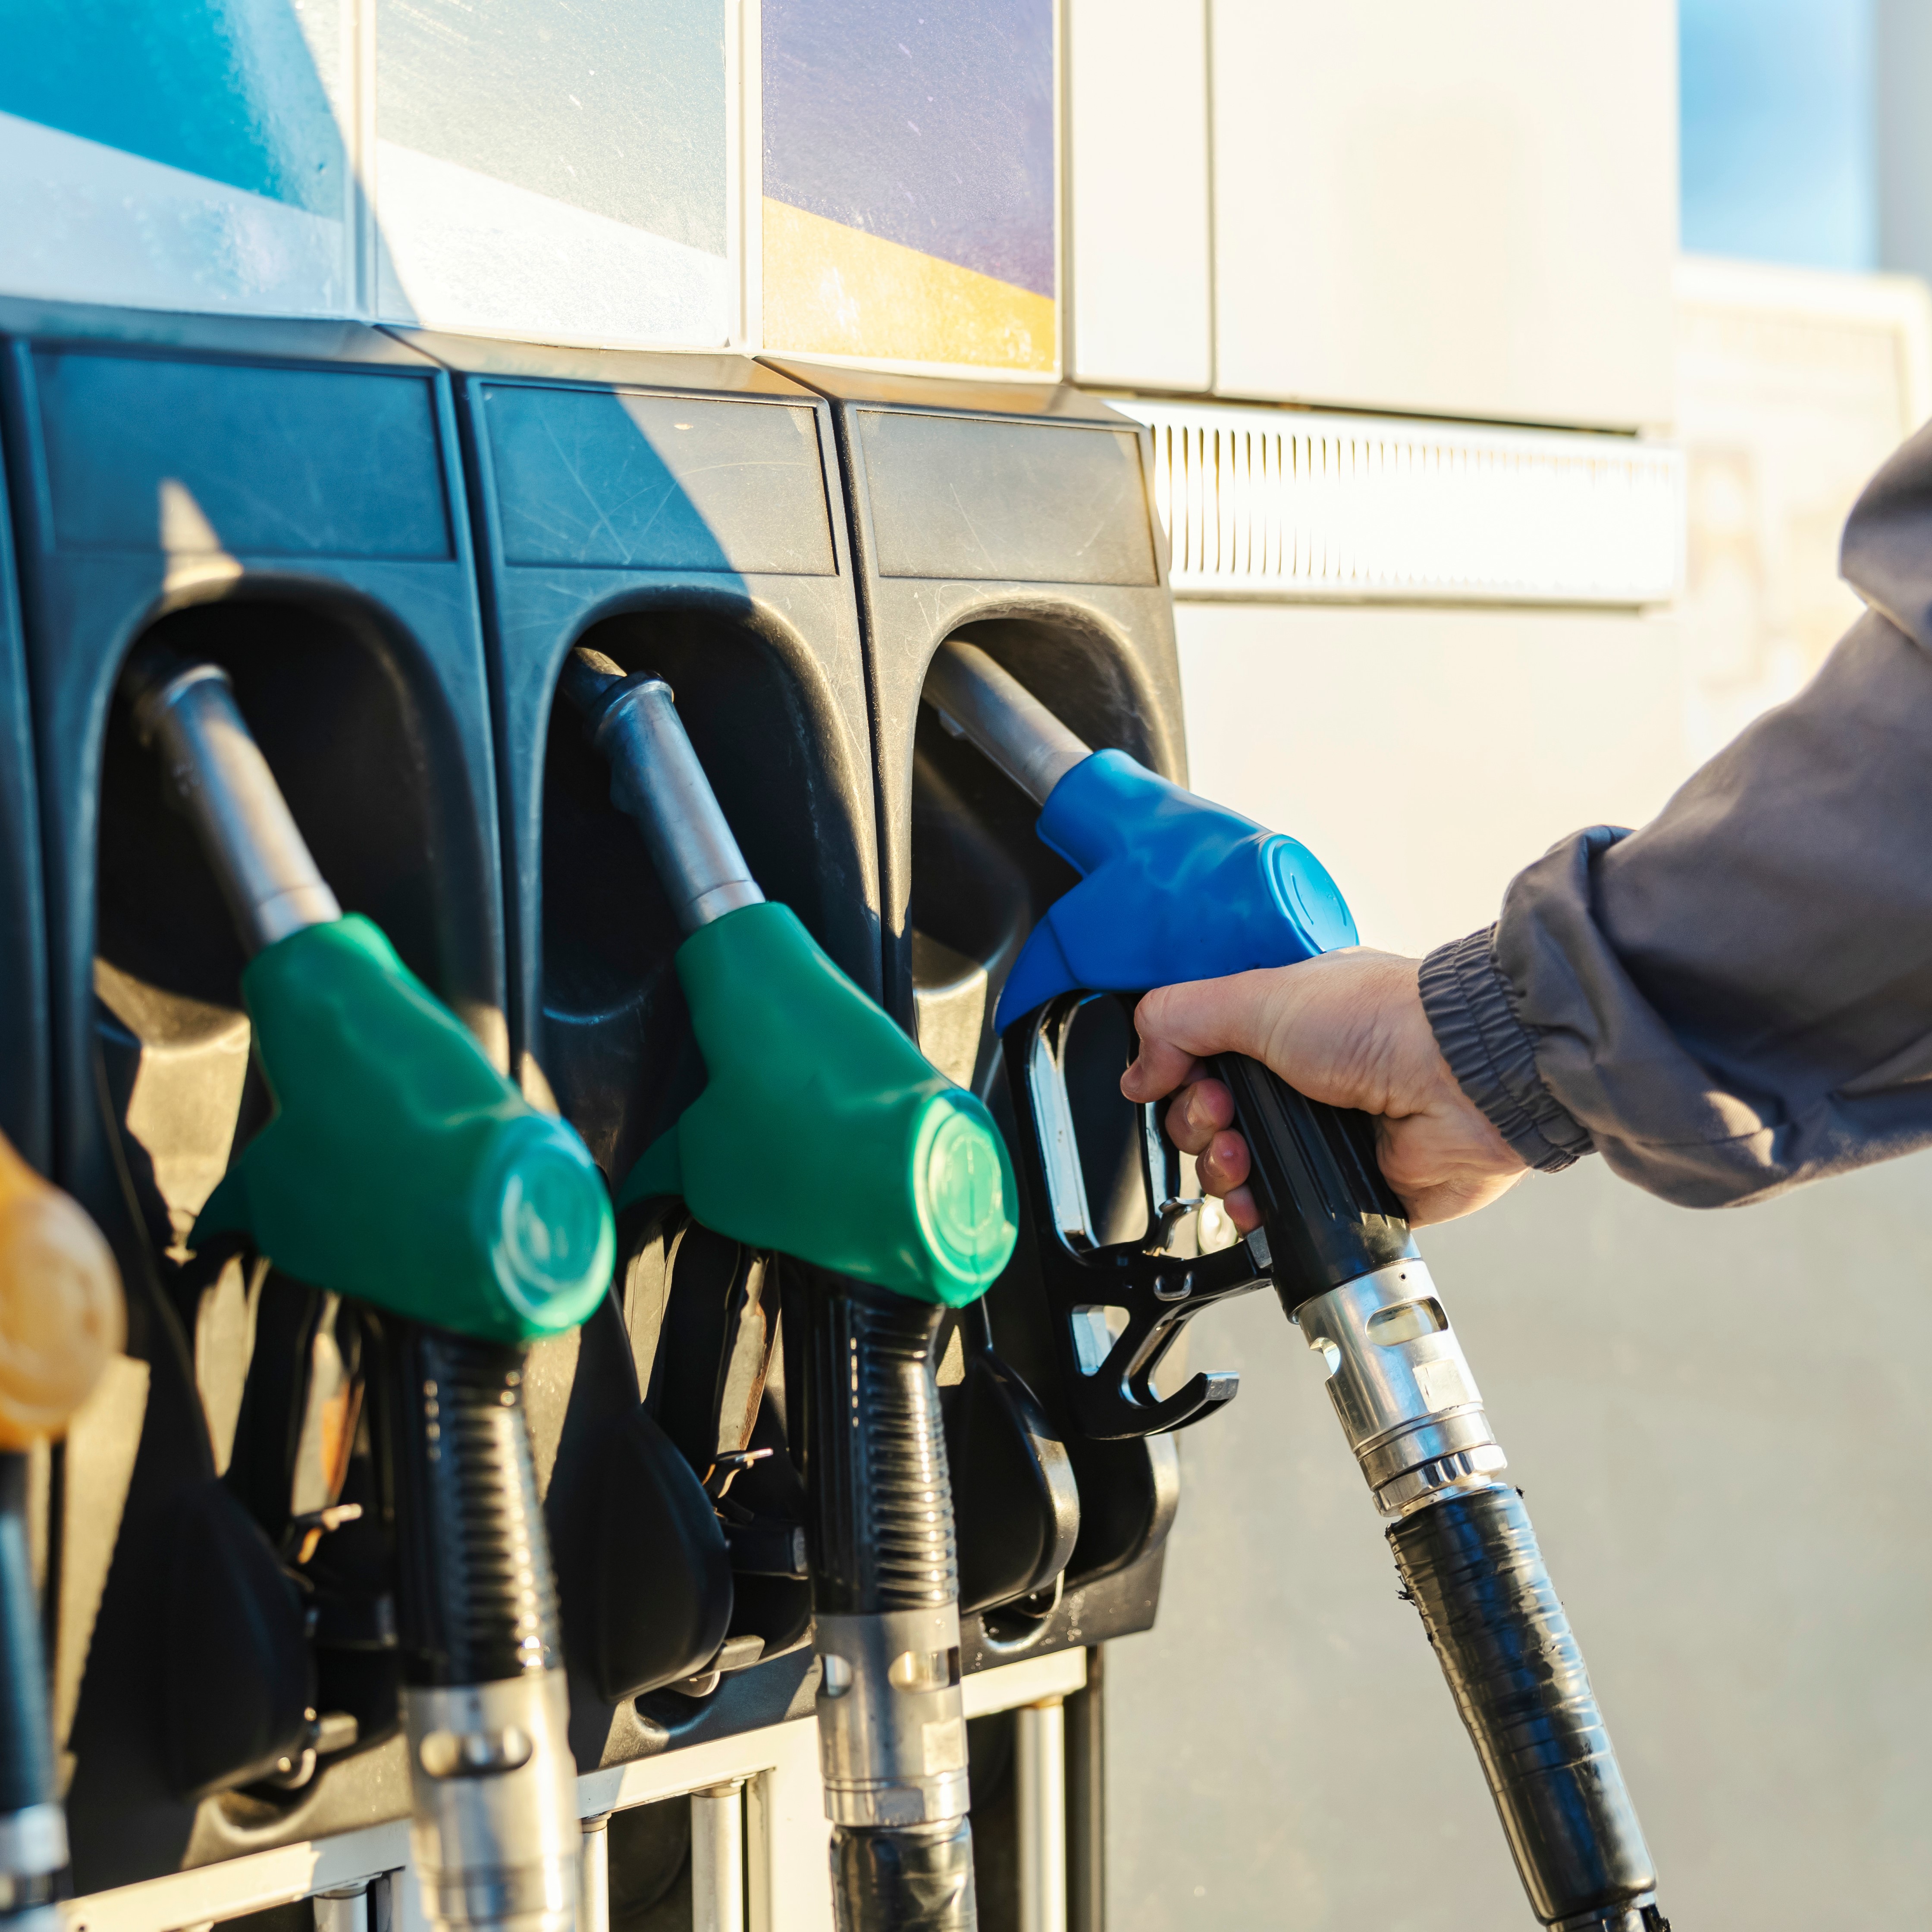 Higher oil prices combat low fuel demand